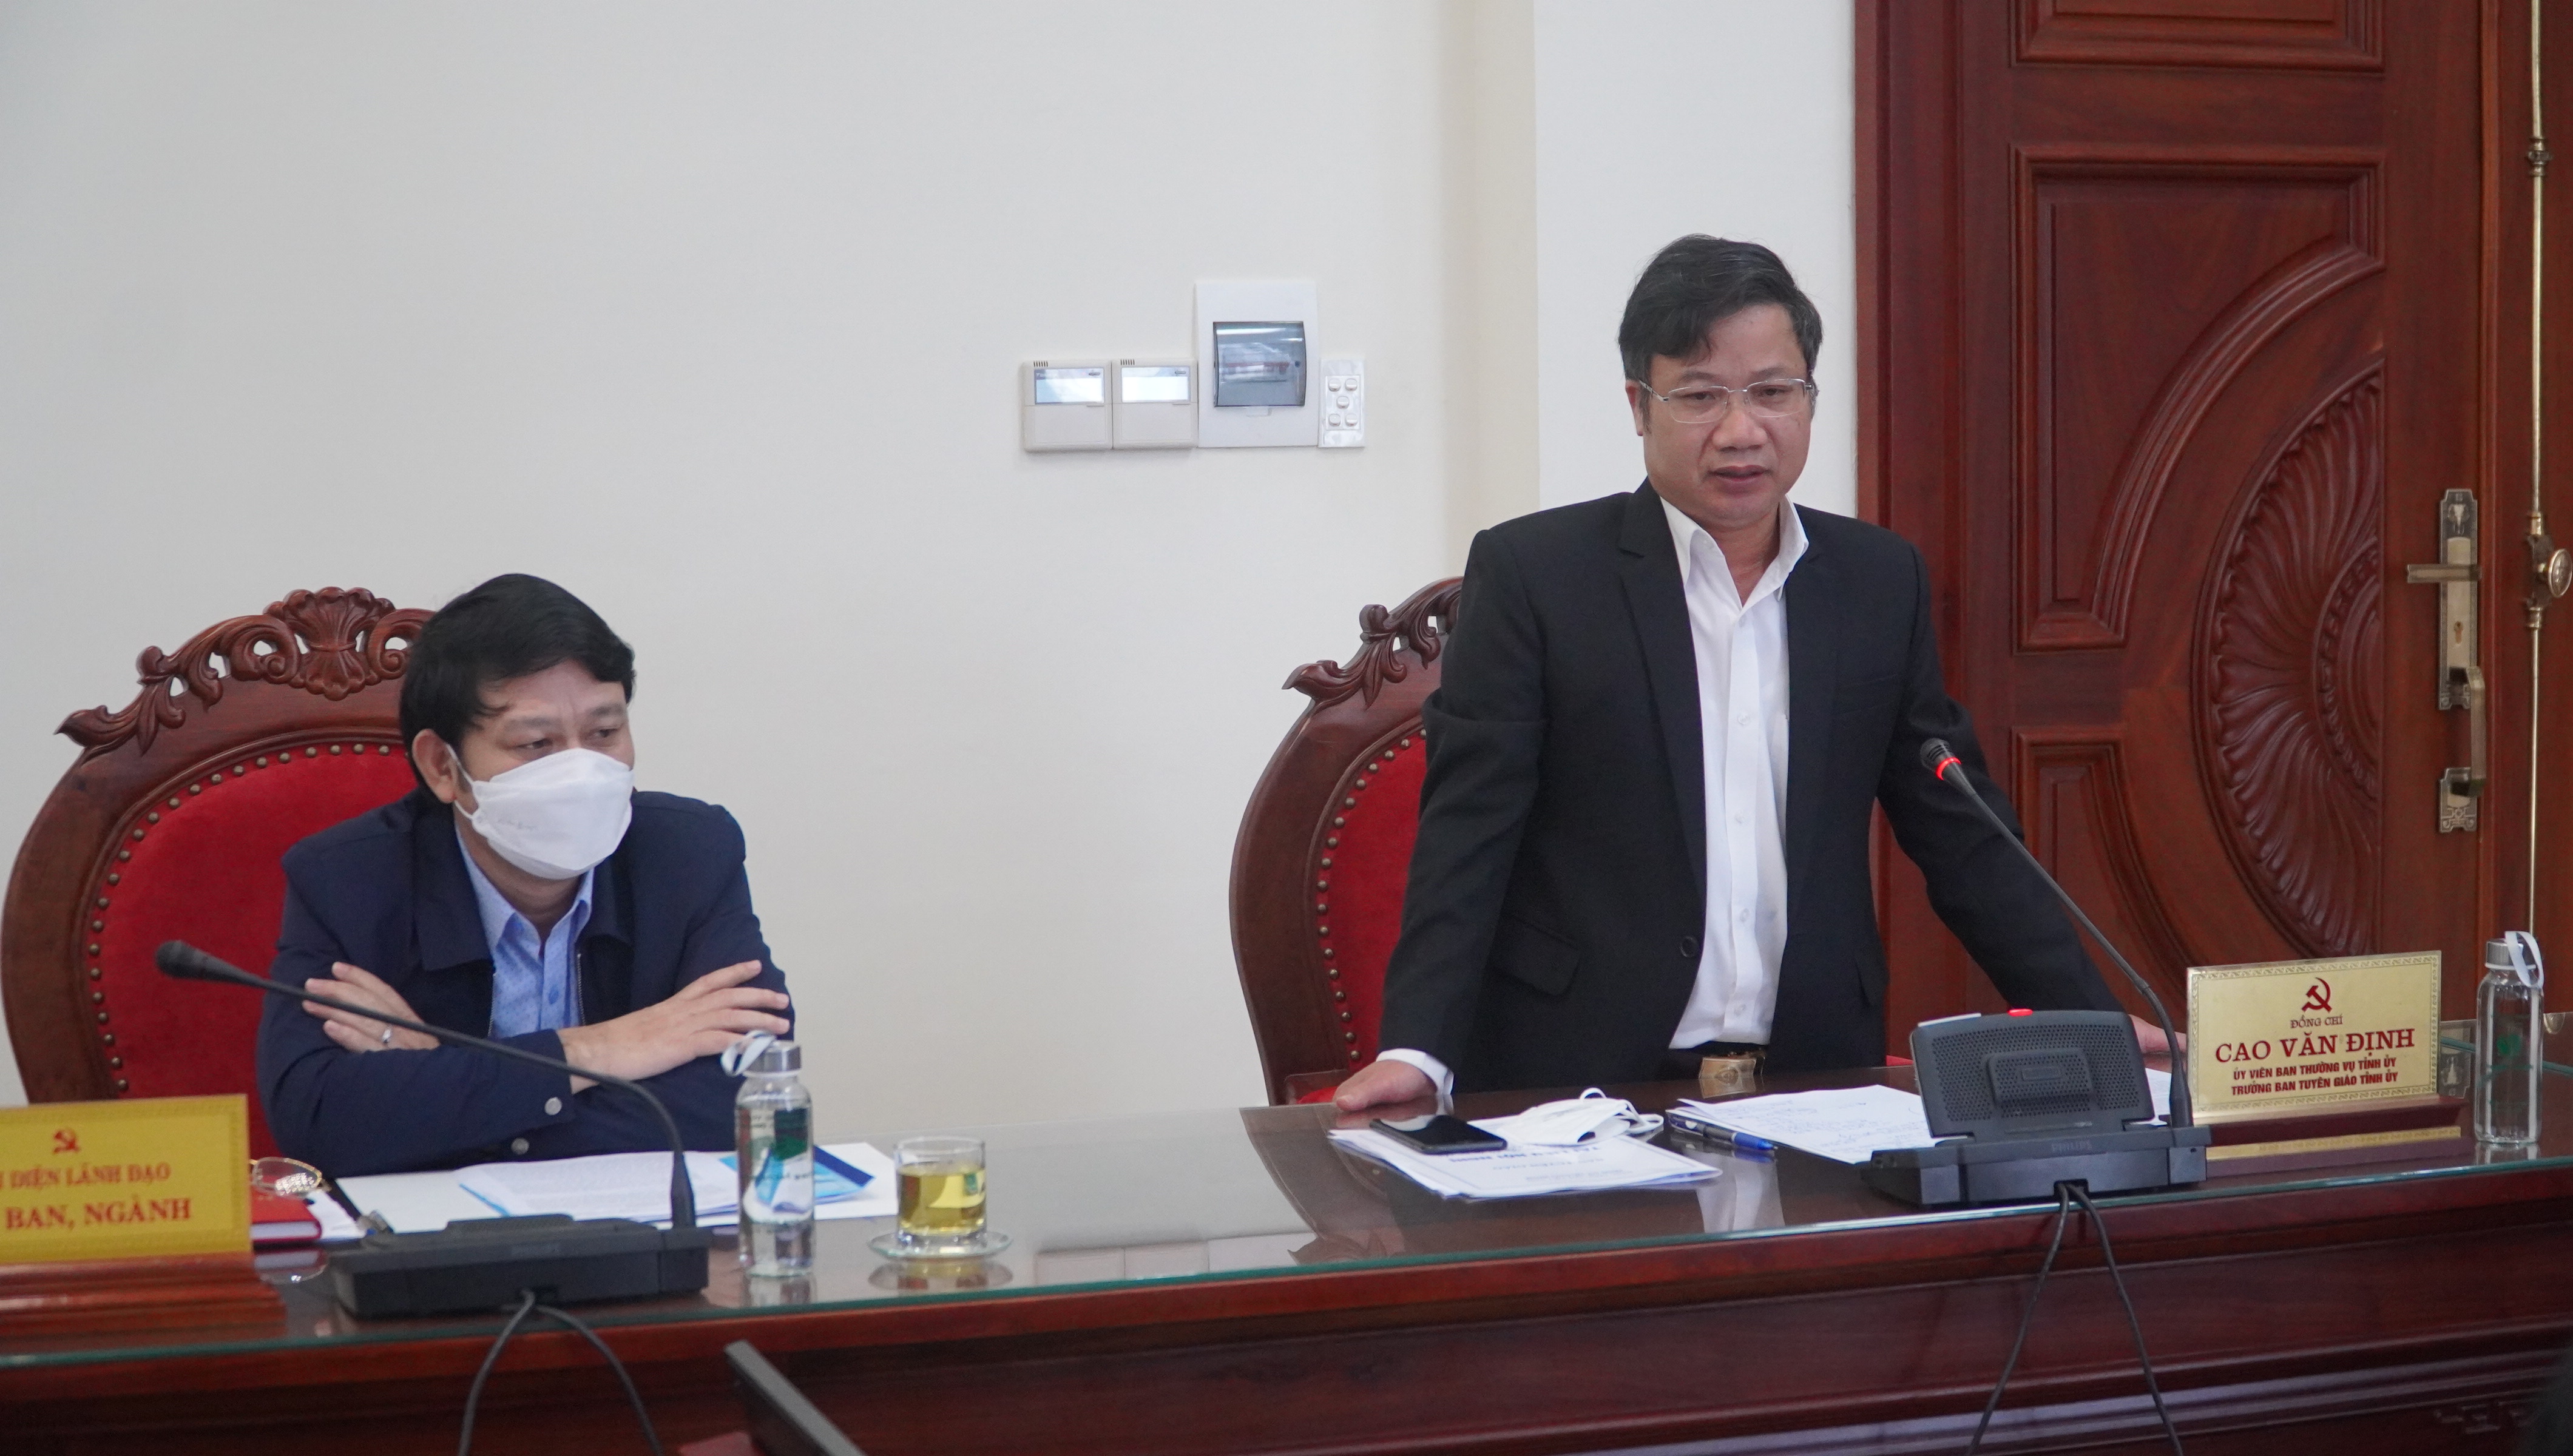 Đồng chí Trưởng ban Tuyên giáo Tỉnh ủy Cao Văn Định thảo luận tại buổi làm việc.